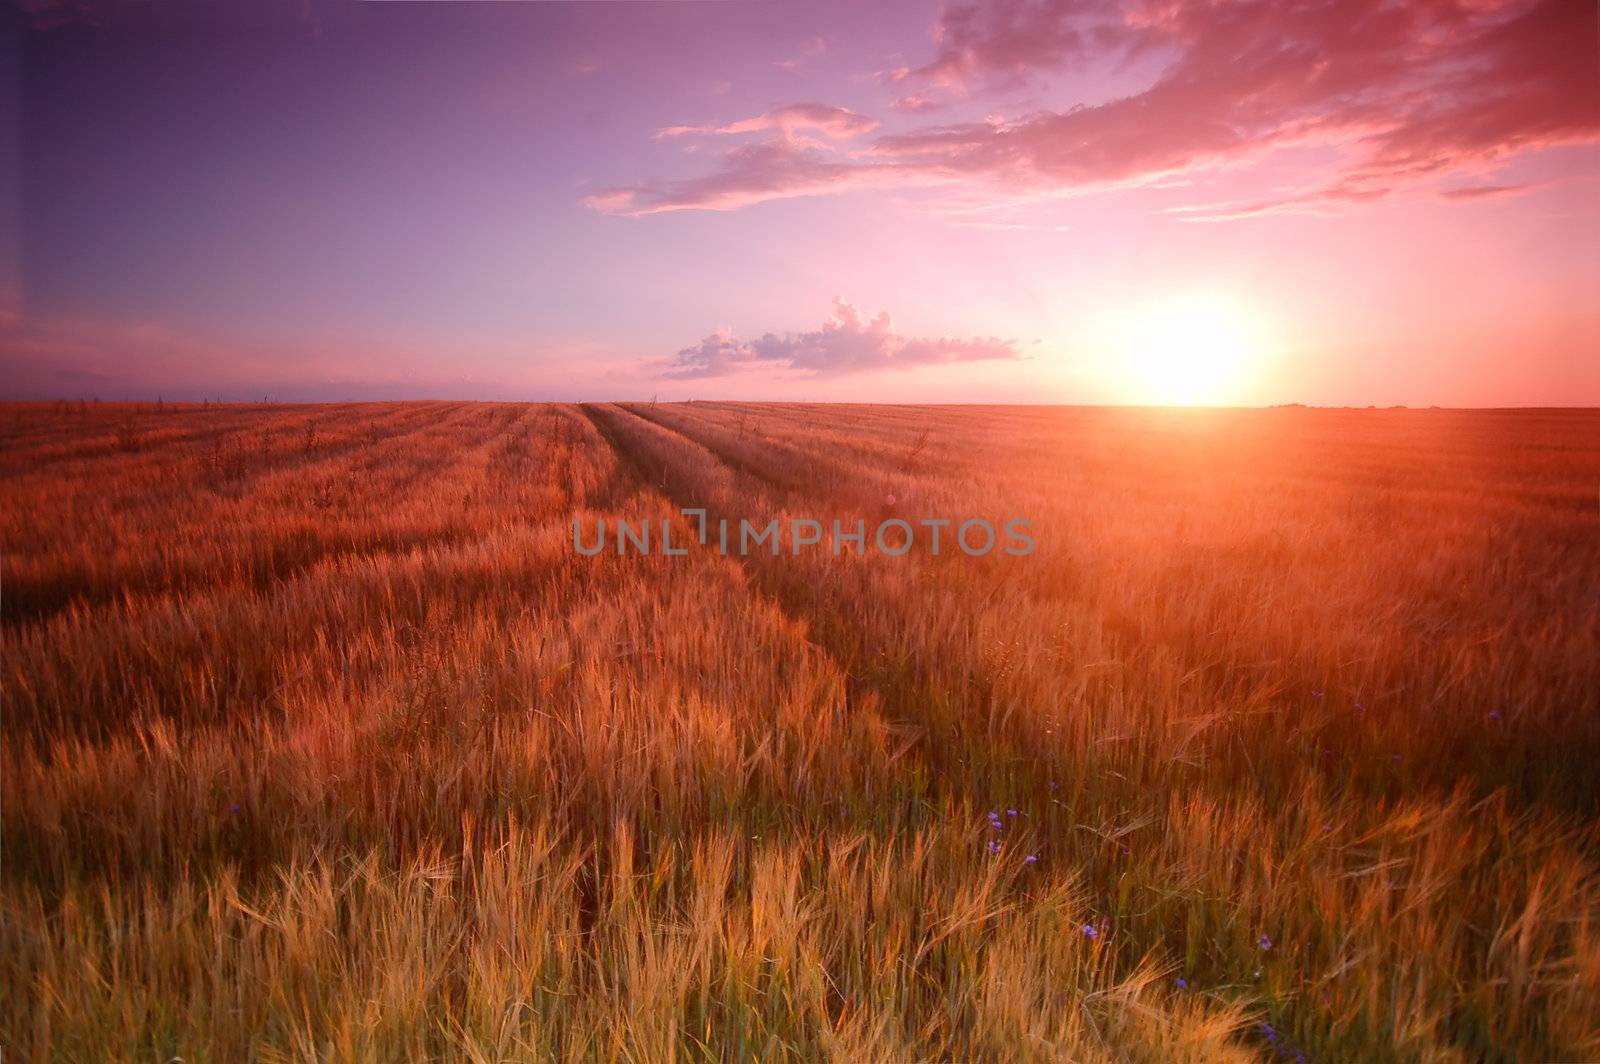 Sunset field scenery with Cross shape in wheat